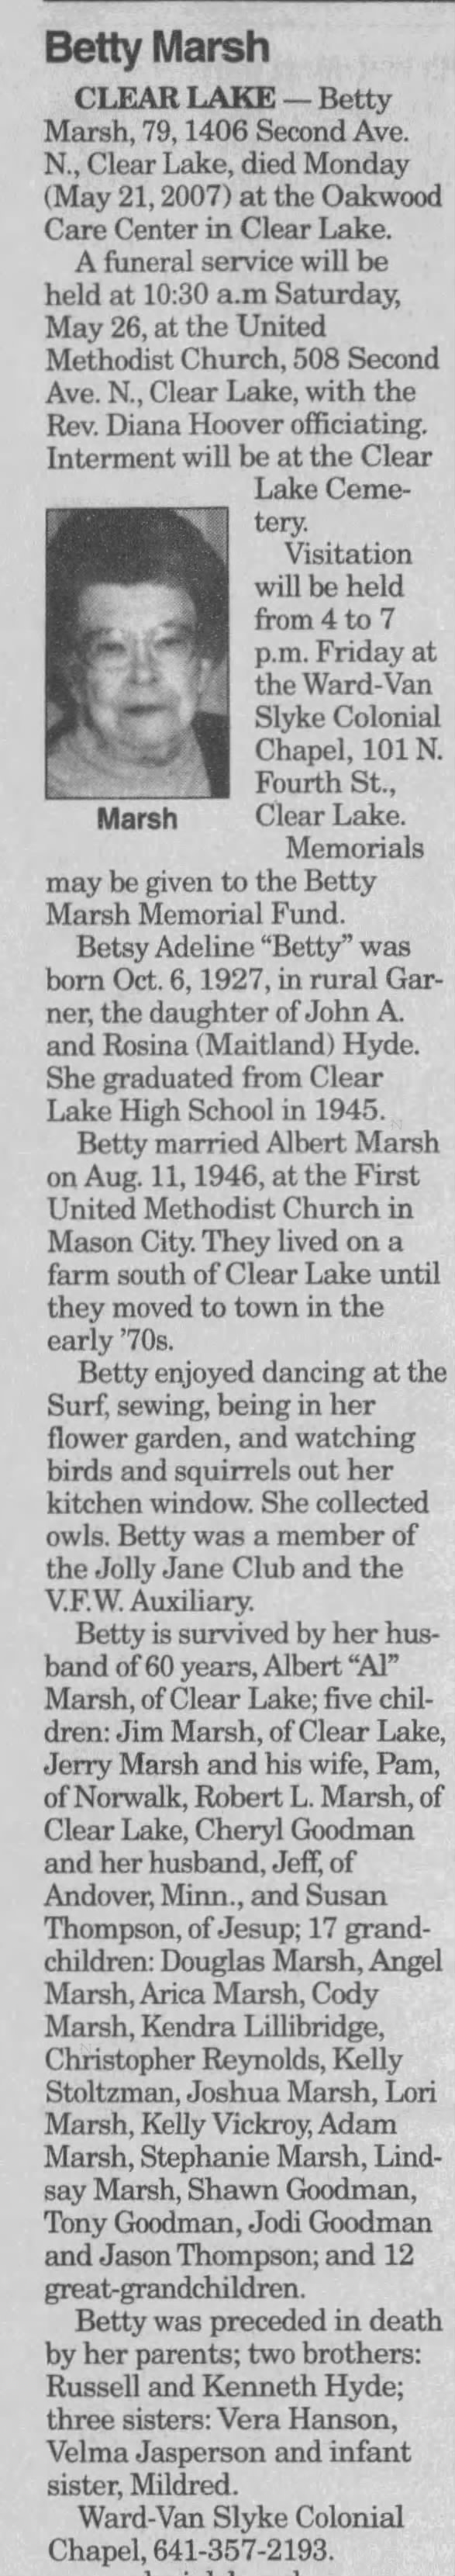 Obituary: Betty Adeline "Betsy" Marsh nee Hyde, 1927-2007 (Aged 79)